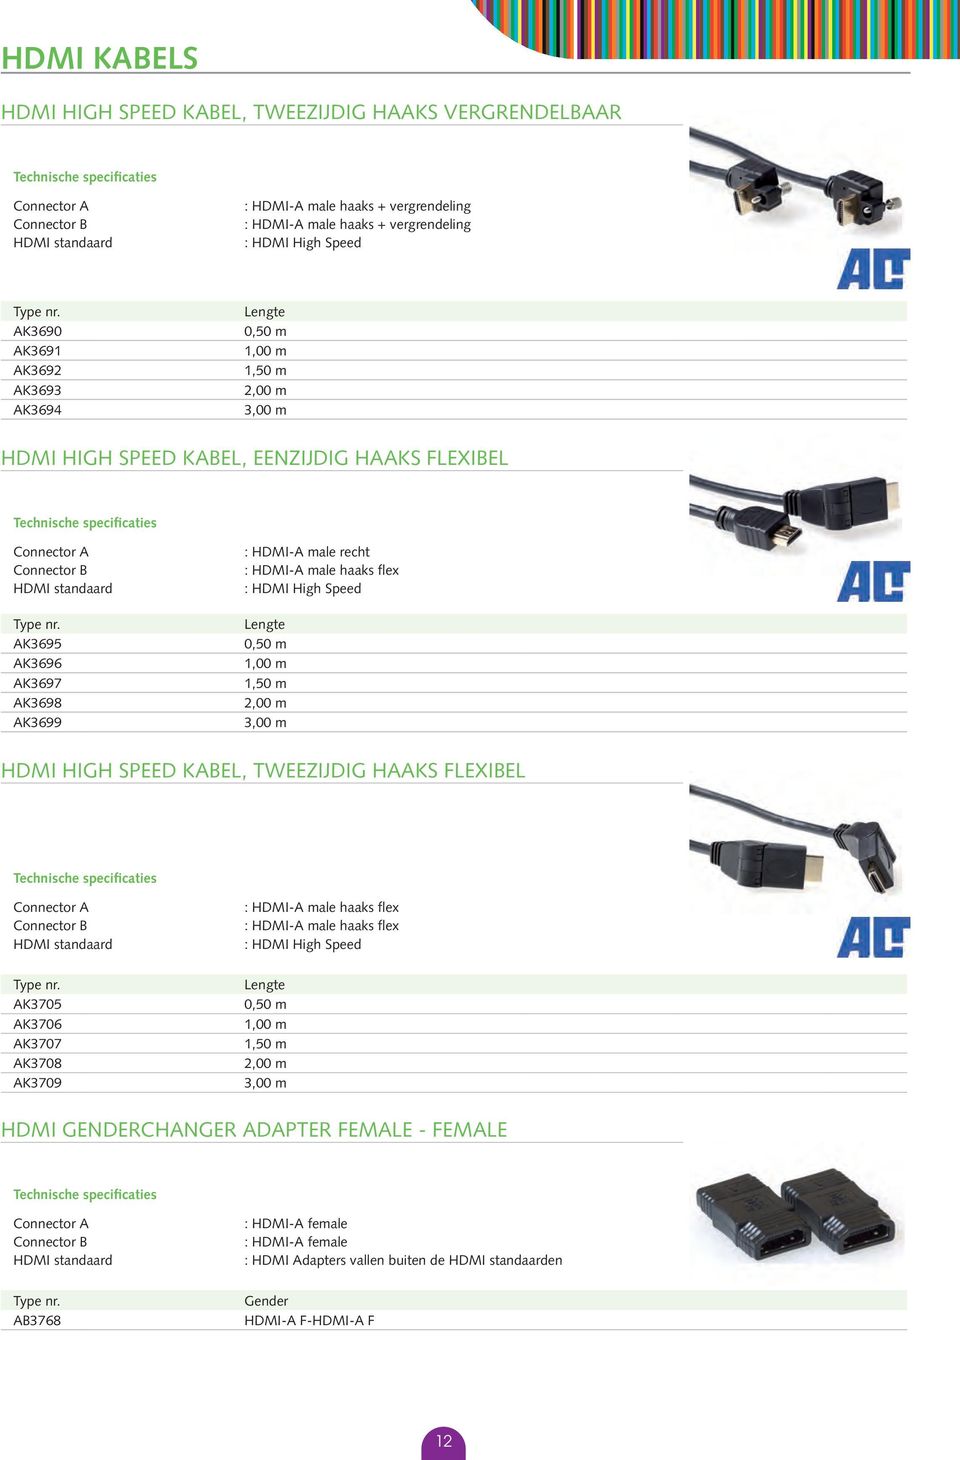 : HDMI High Speed HDMI High Speed kabel, tweezijdig haaks flexibel HDMI standaard AK3705 AK3706 AK3707 AK3708 AK3709 : HDMI-A male haaks flex : HDMI-A male haaks flex : HDMI